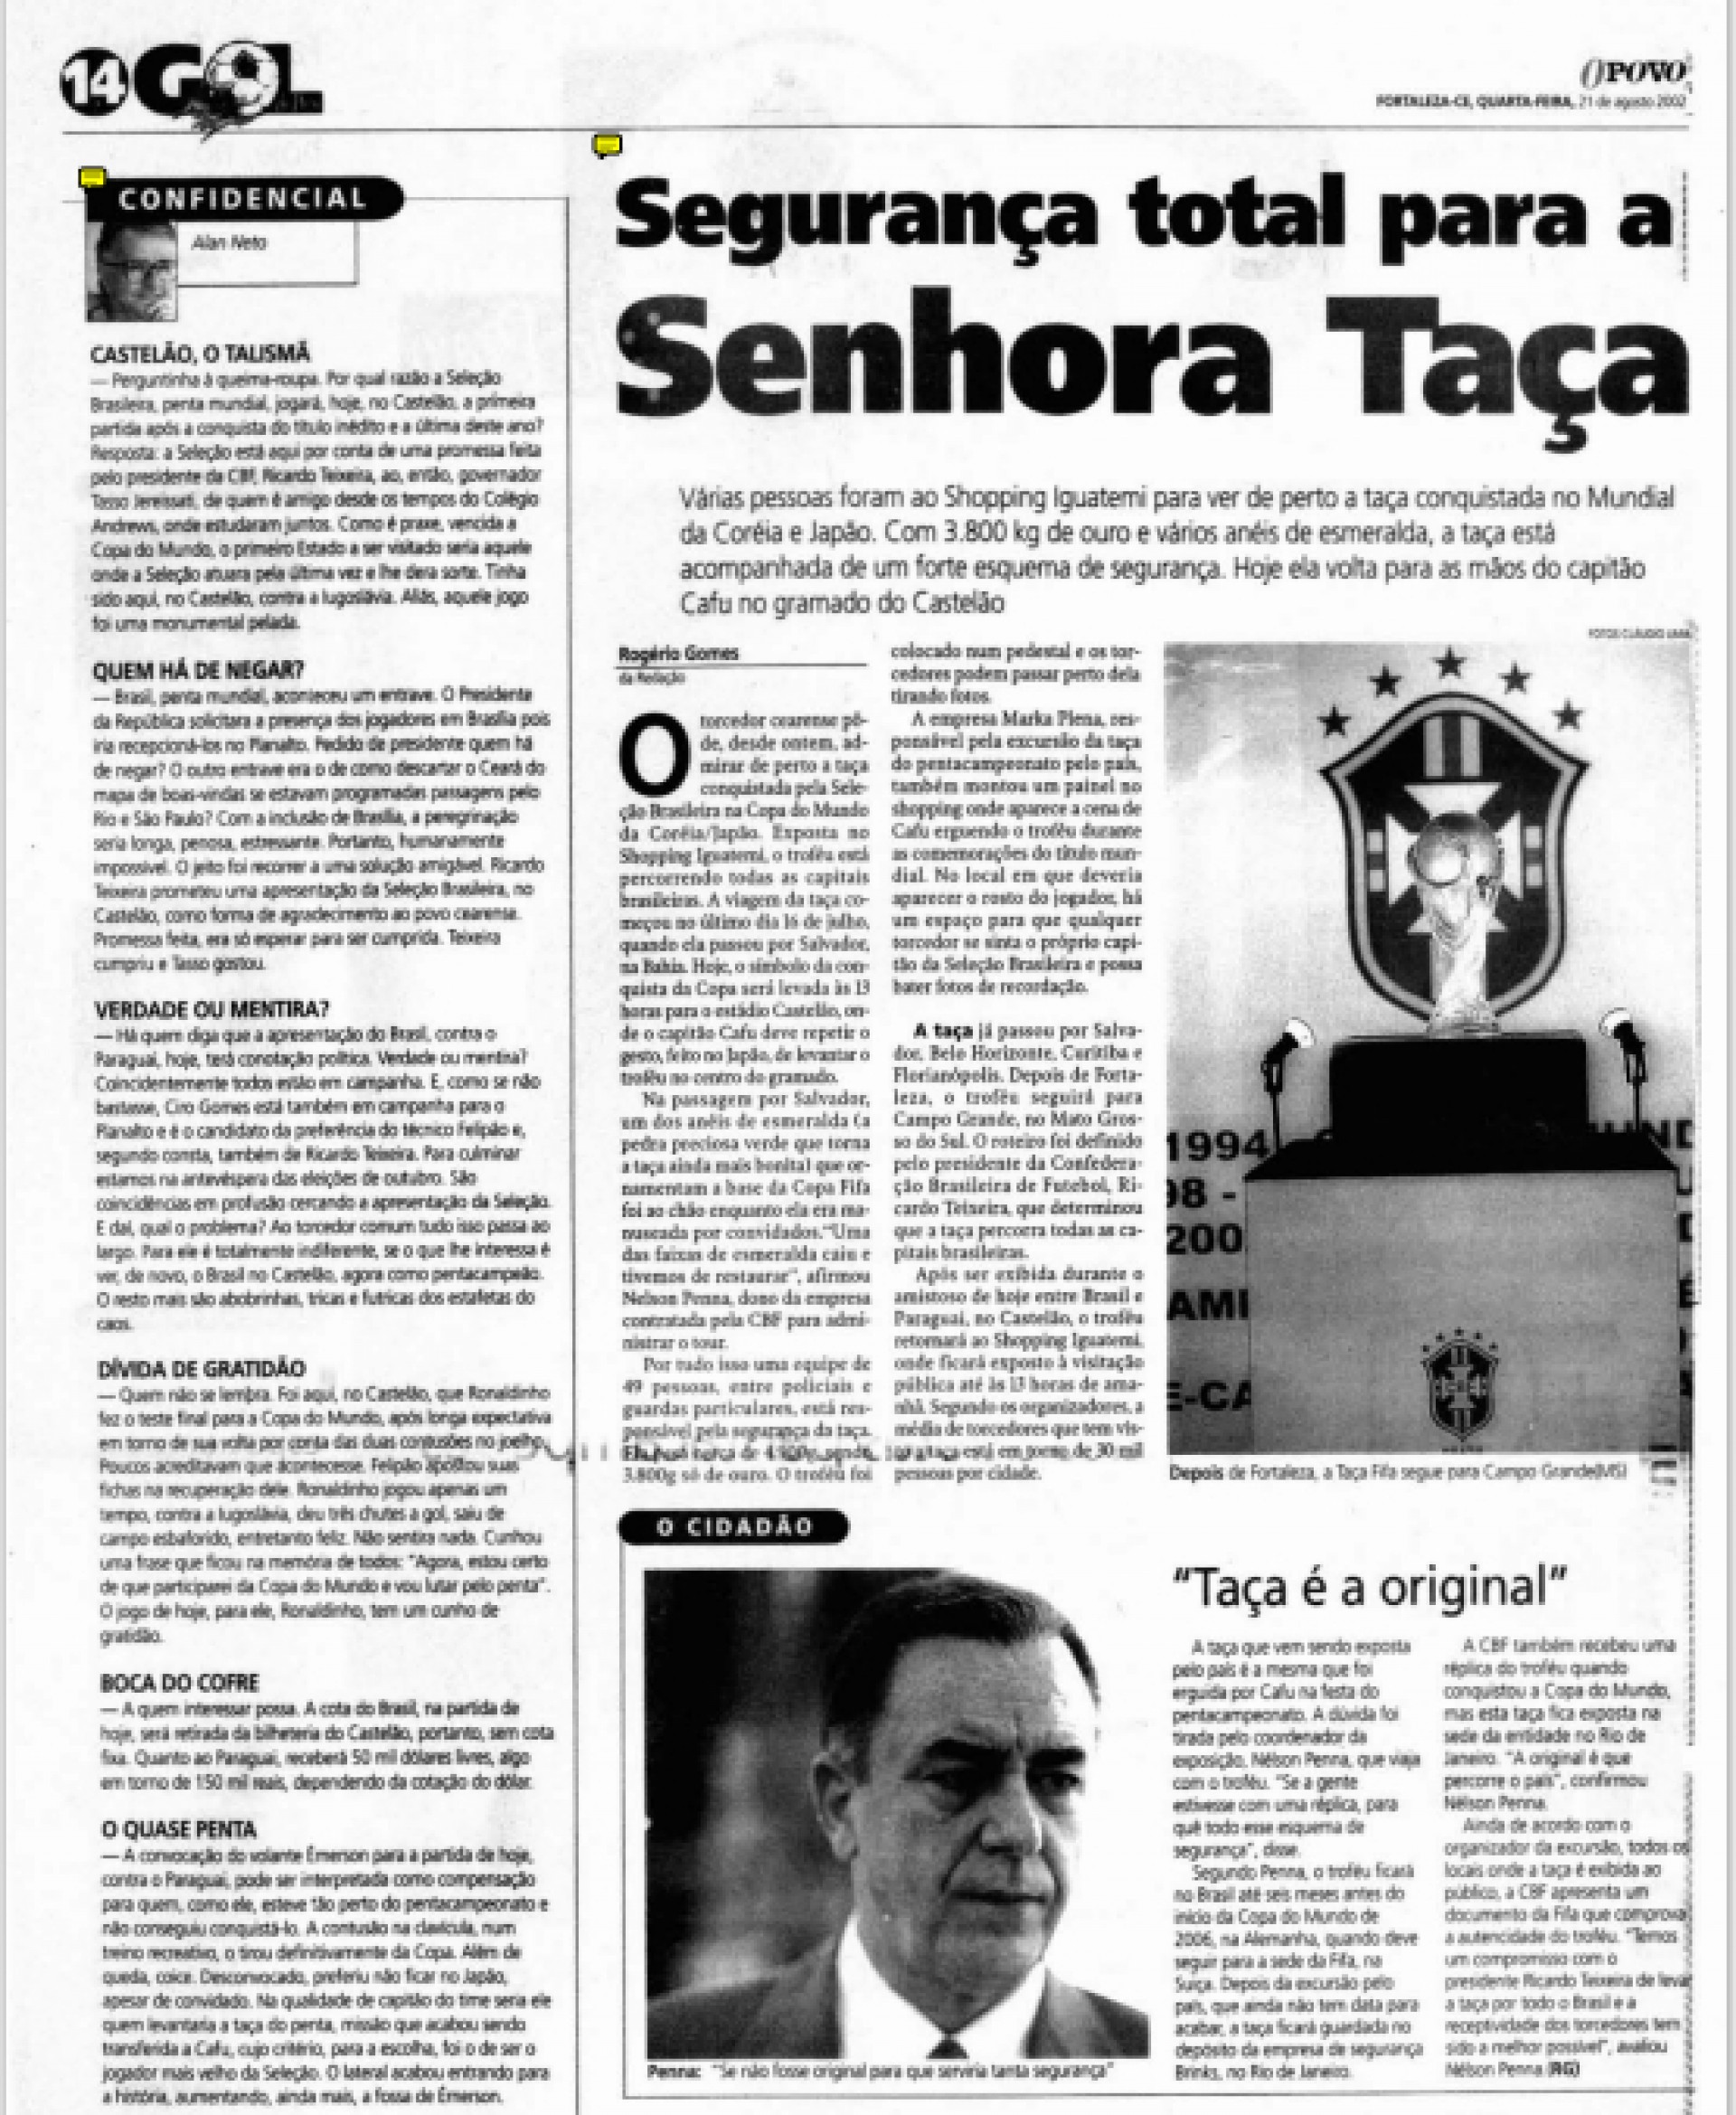 (Foto: Acervo O POVO)Matéria do O POVO sobre o amistoso entre Brasil e Paraguai no Castelão em 2002